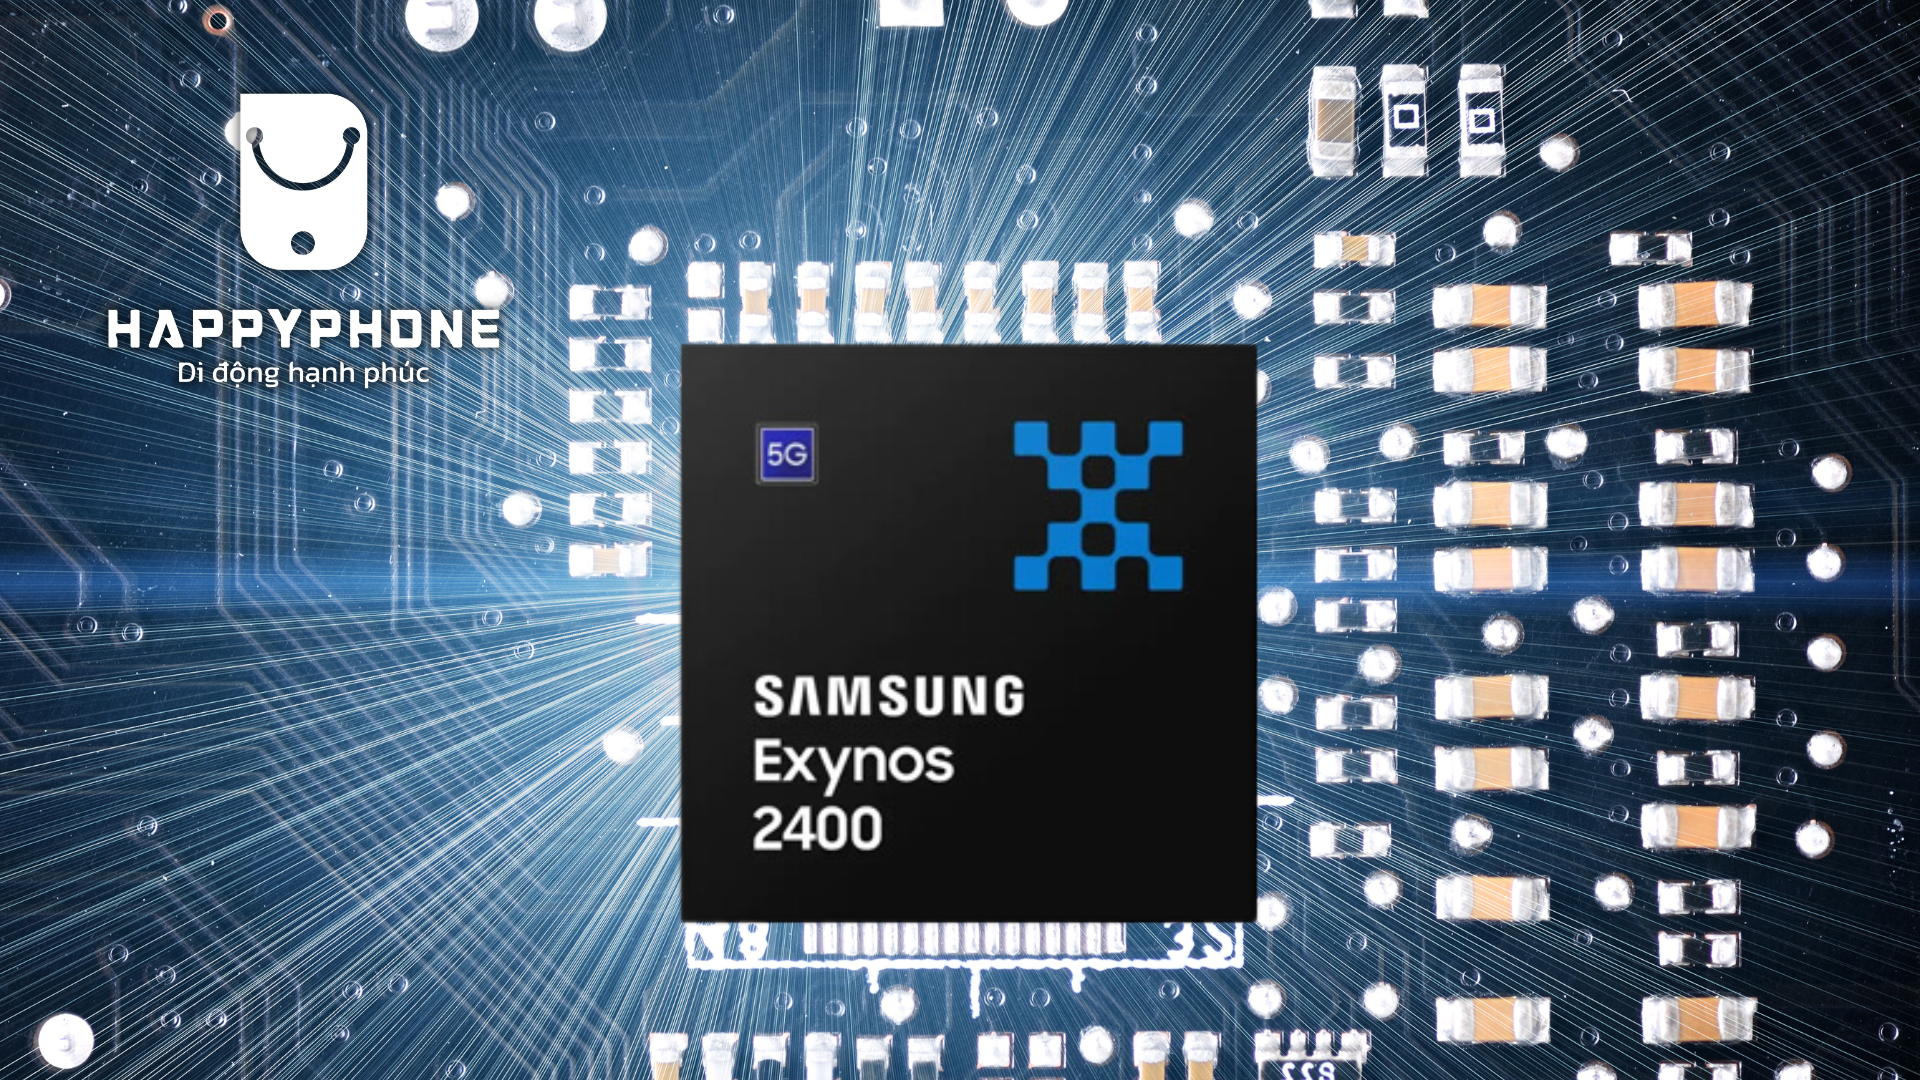 Con chip Exynos 2400 for Galaxy mang đến cấu hình cực kỳ mạnh mẽ